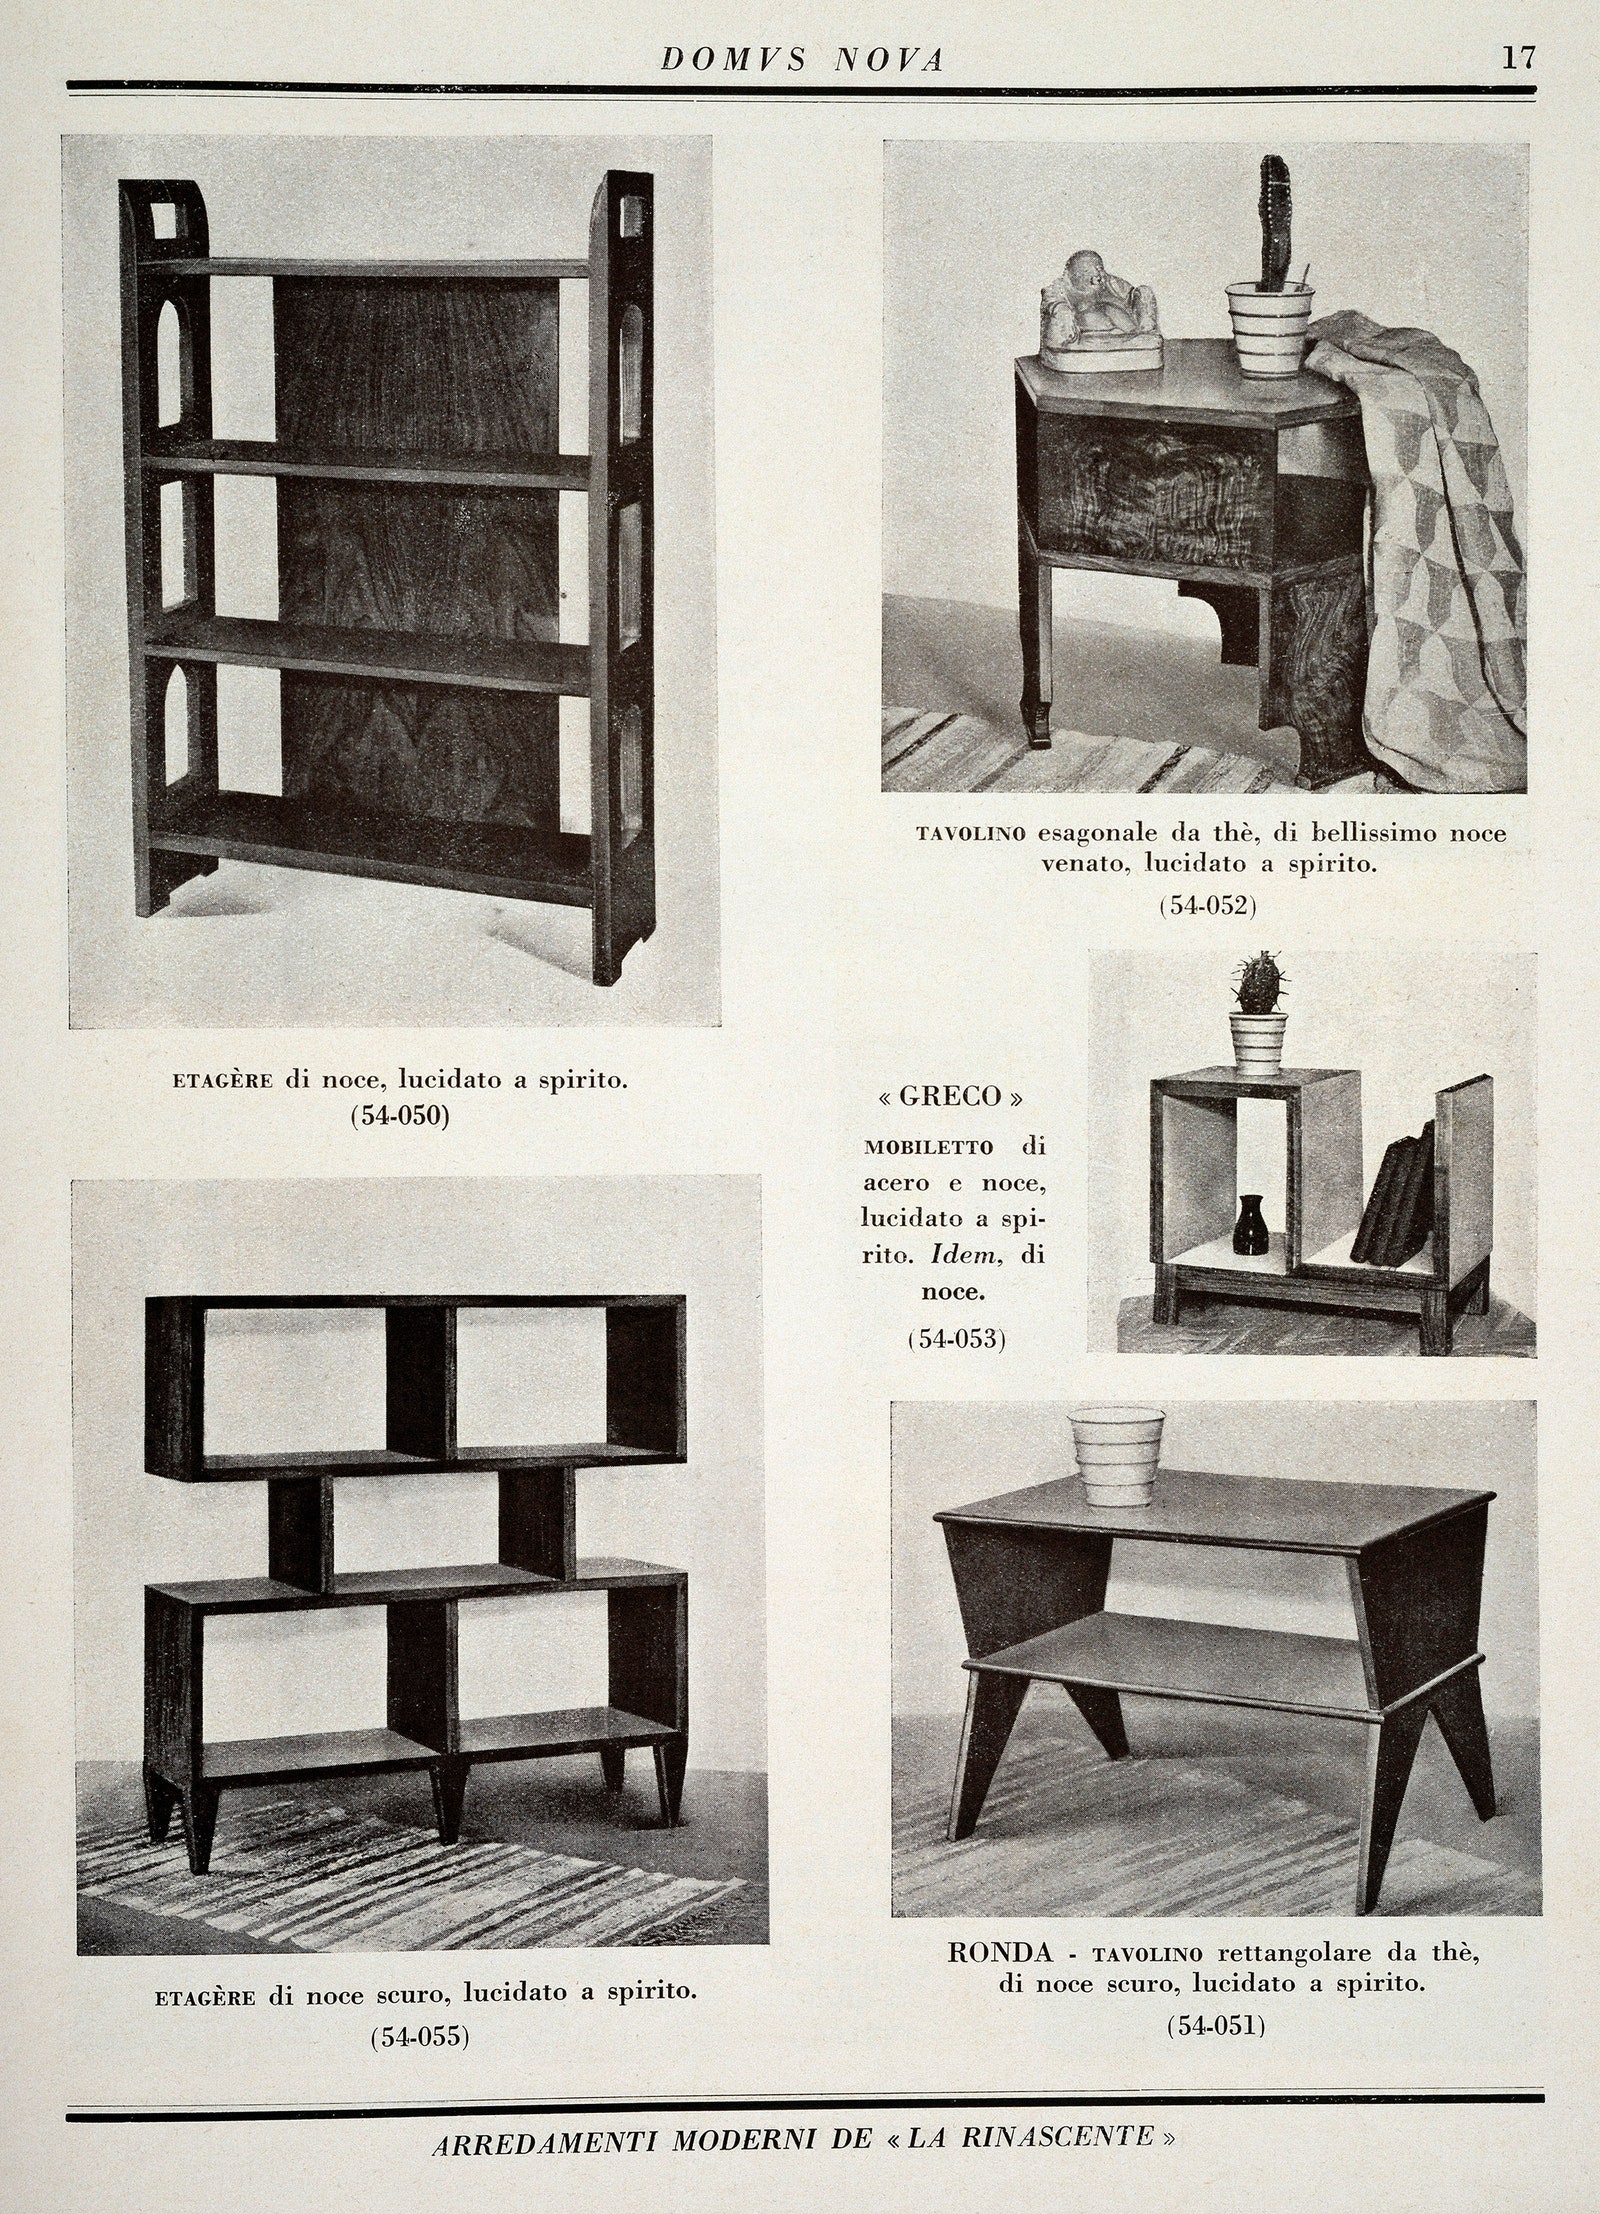 Полоса из мебельного каталога Domus Nova для La Rinascente 1927г.nbsp